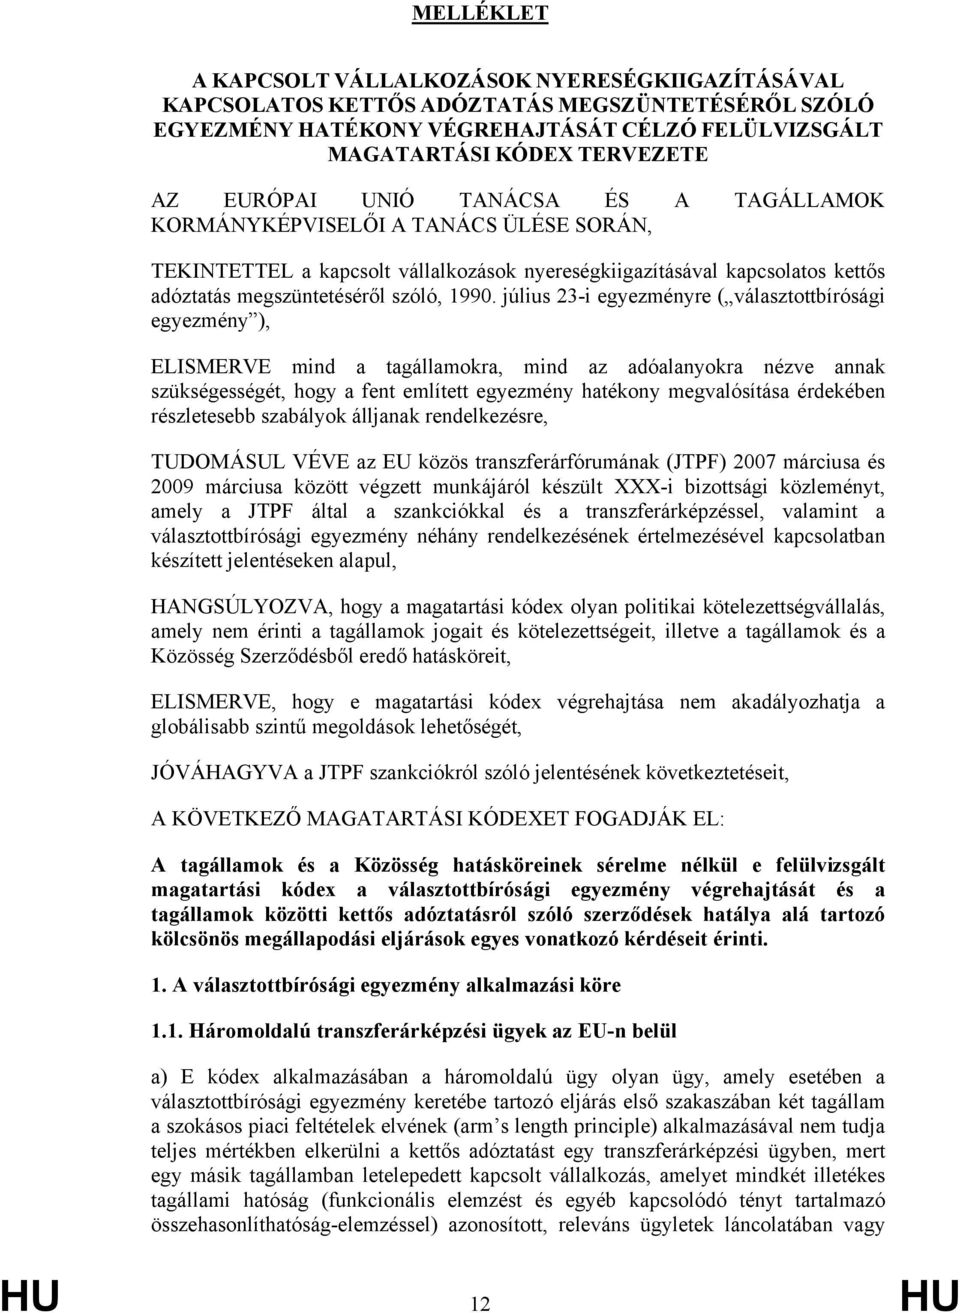 július 23-i egyezményre ( választottbírósági egyezmény ), ELISMERVE mind a tagállamokra, mind az adóalanyokra nézve annak szükségességét, hogy a fent említett egyezmény hatékony megvalósítása